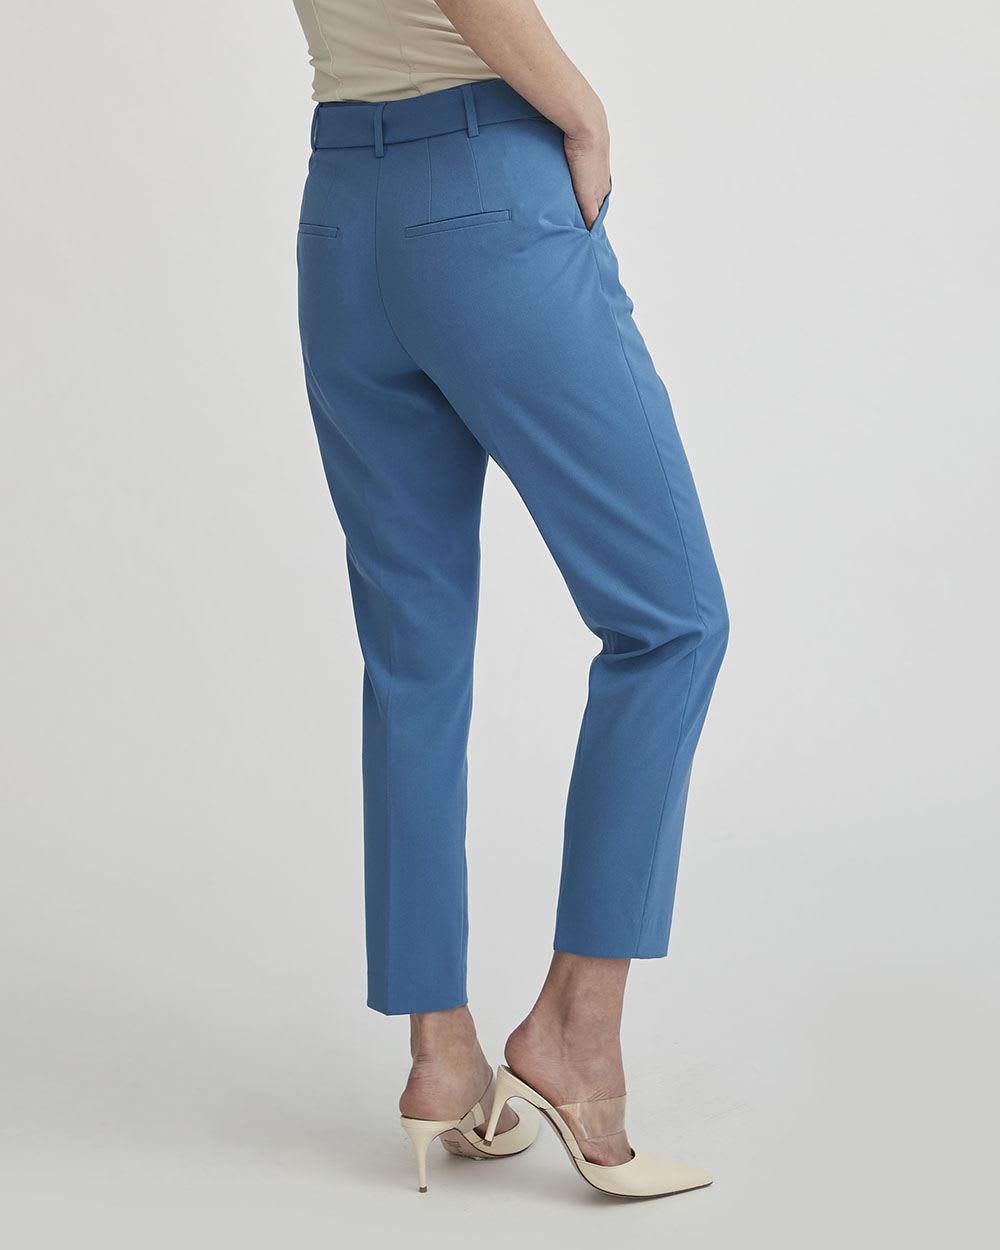 Pantalon Bleu Azur à Taille Haute et Cheville Fuselée avec Ceinture - 28 "